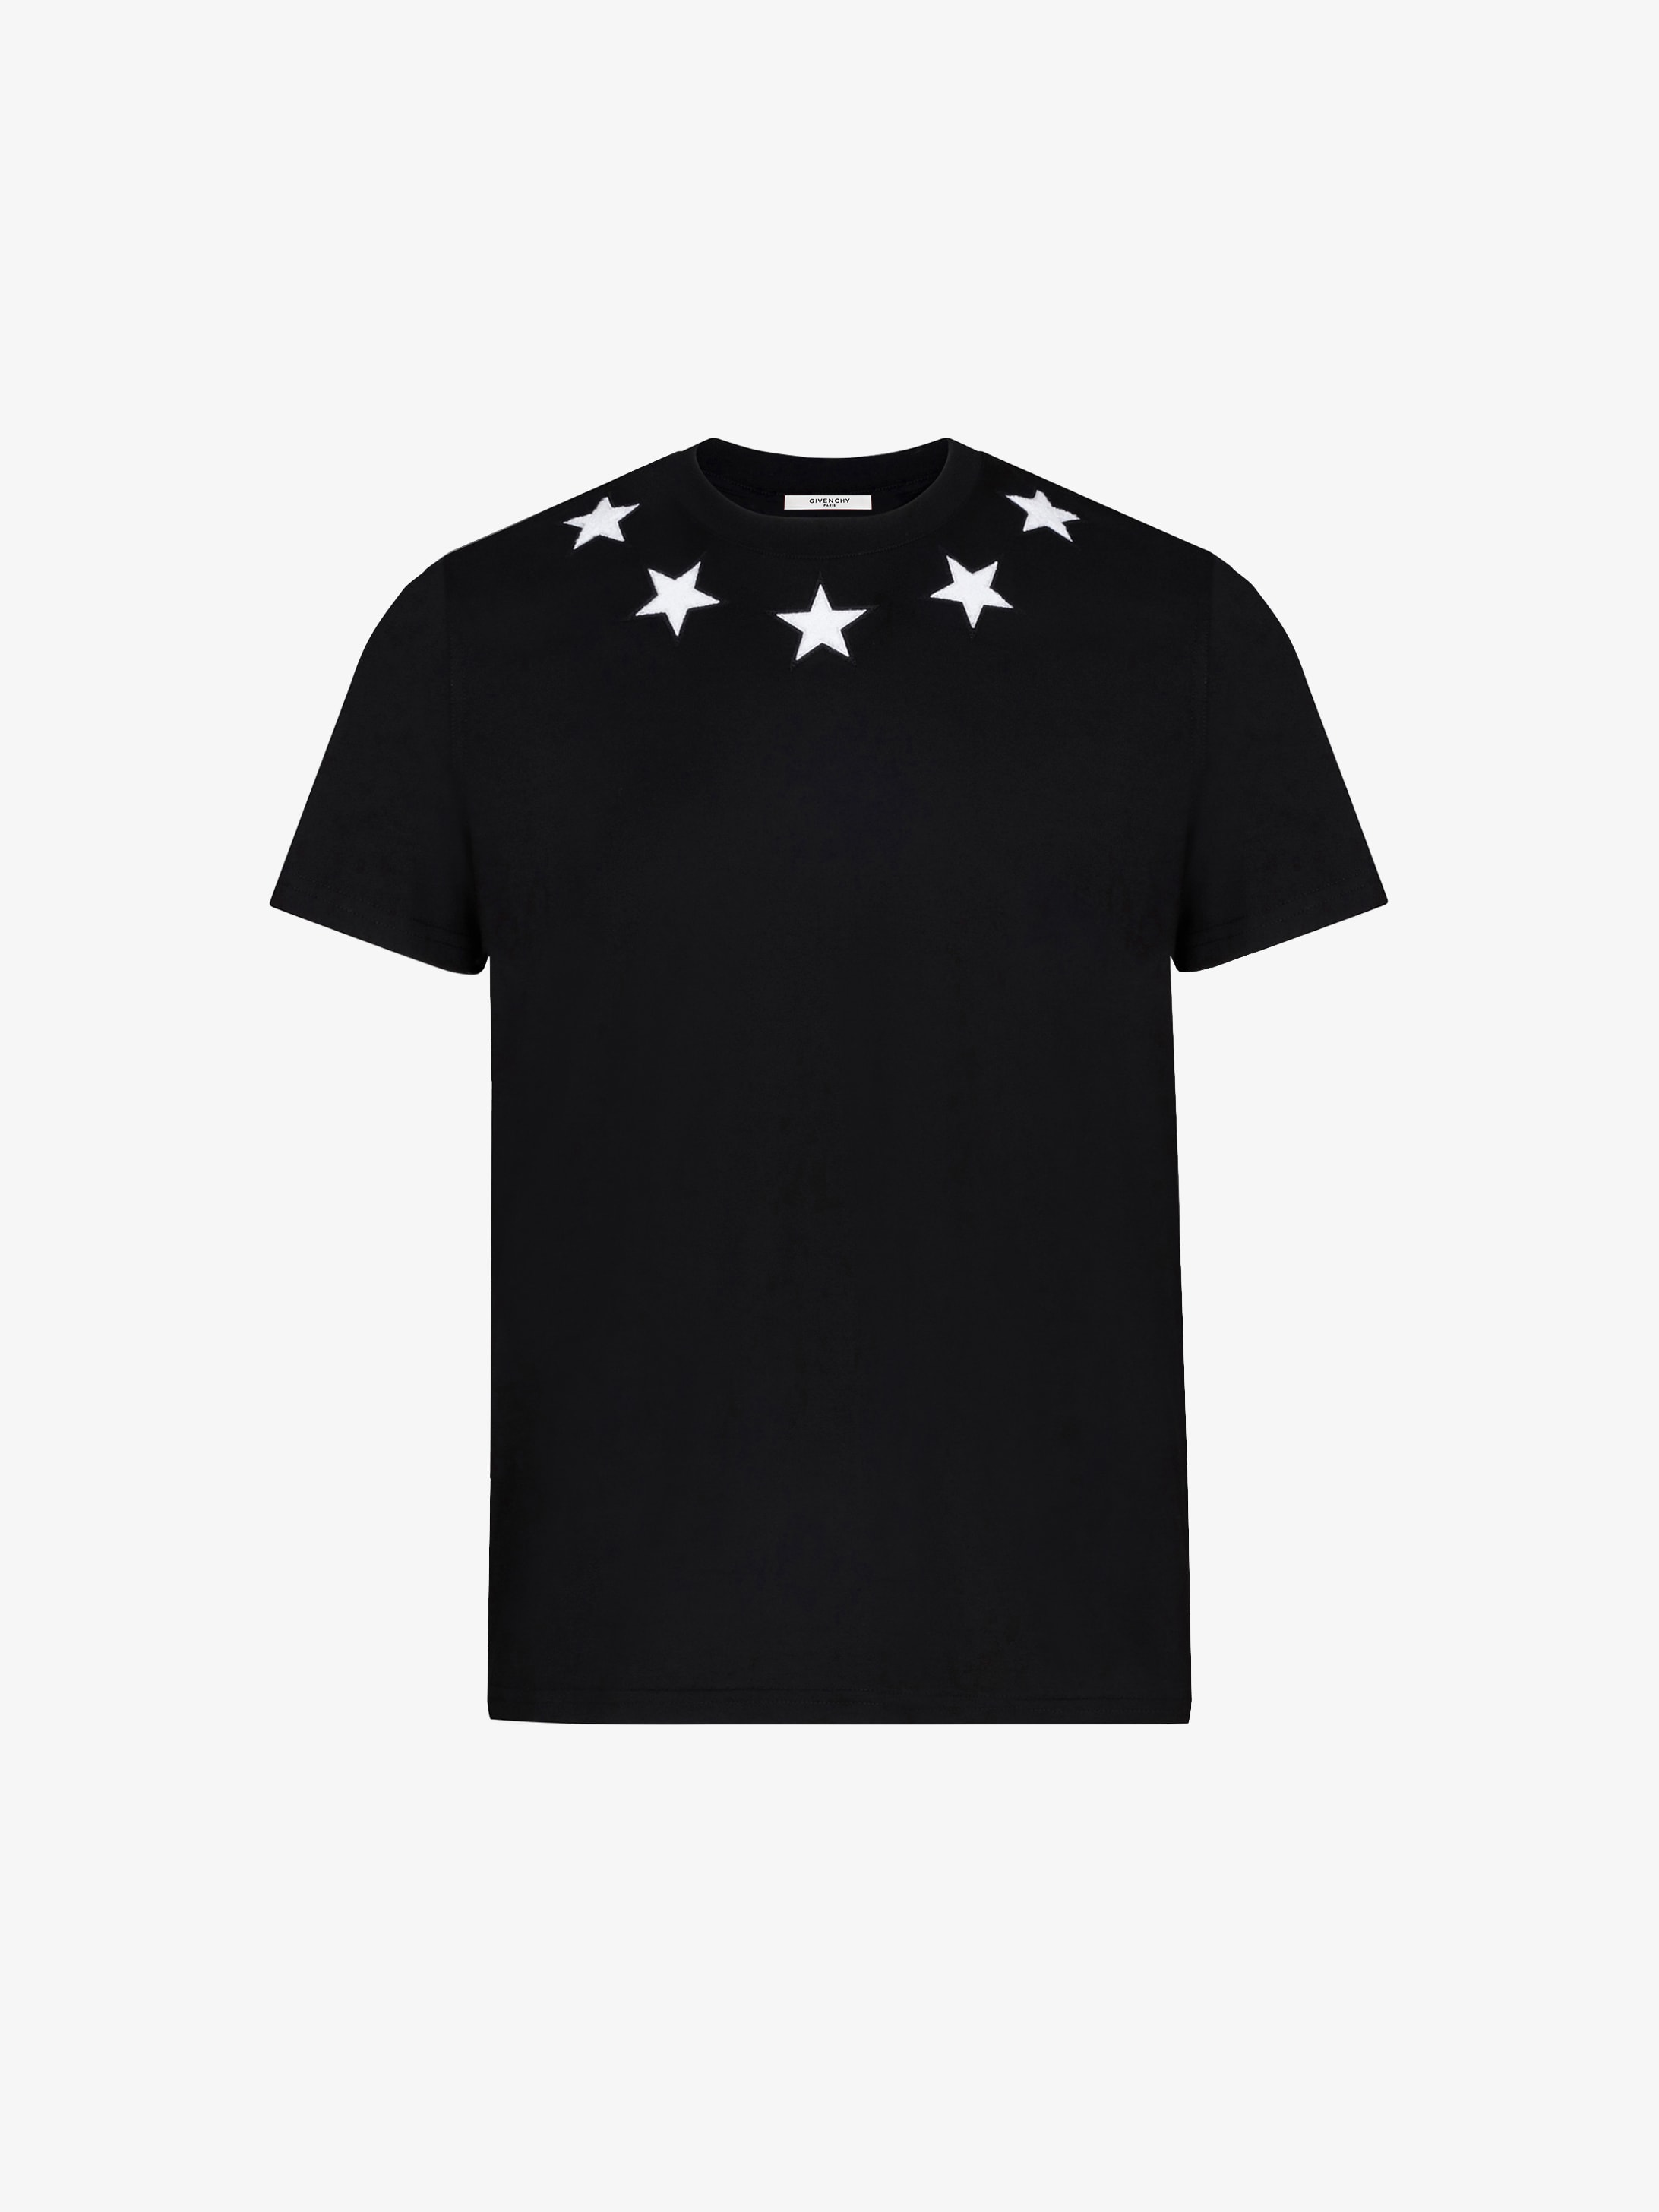 Givenchy Stars t-shirt | GIVENCHY Paris